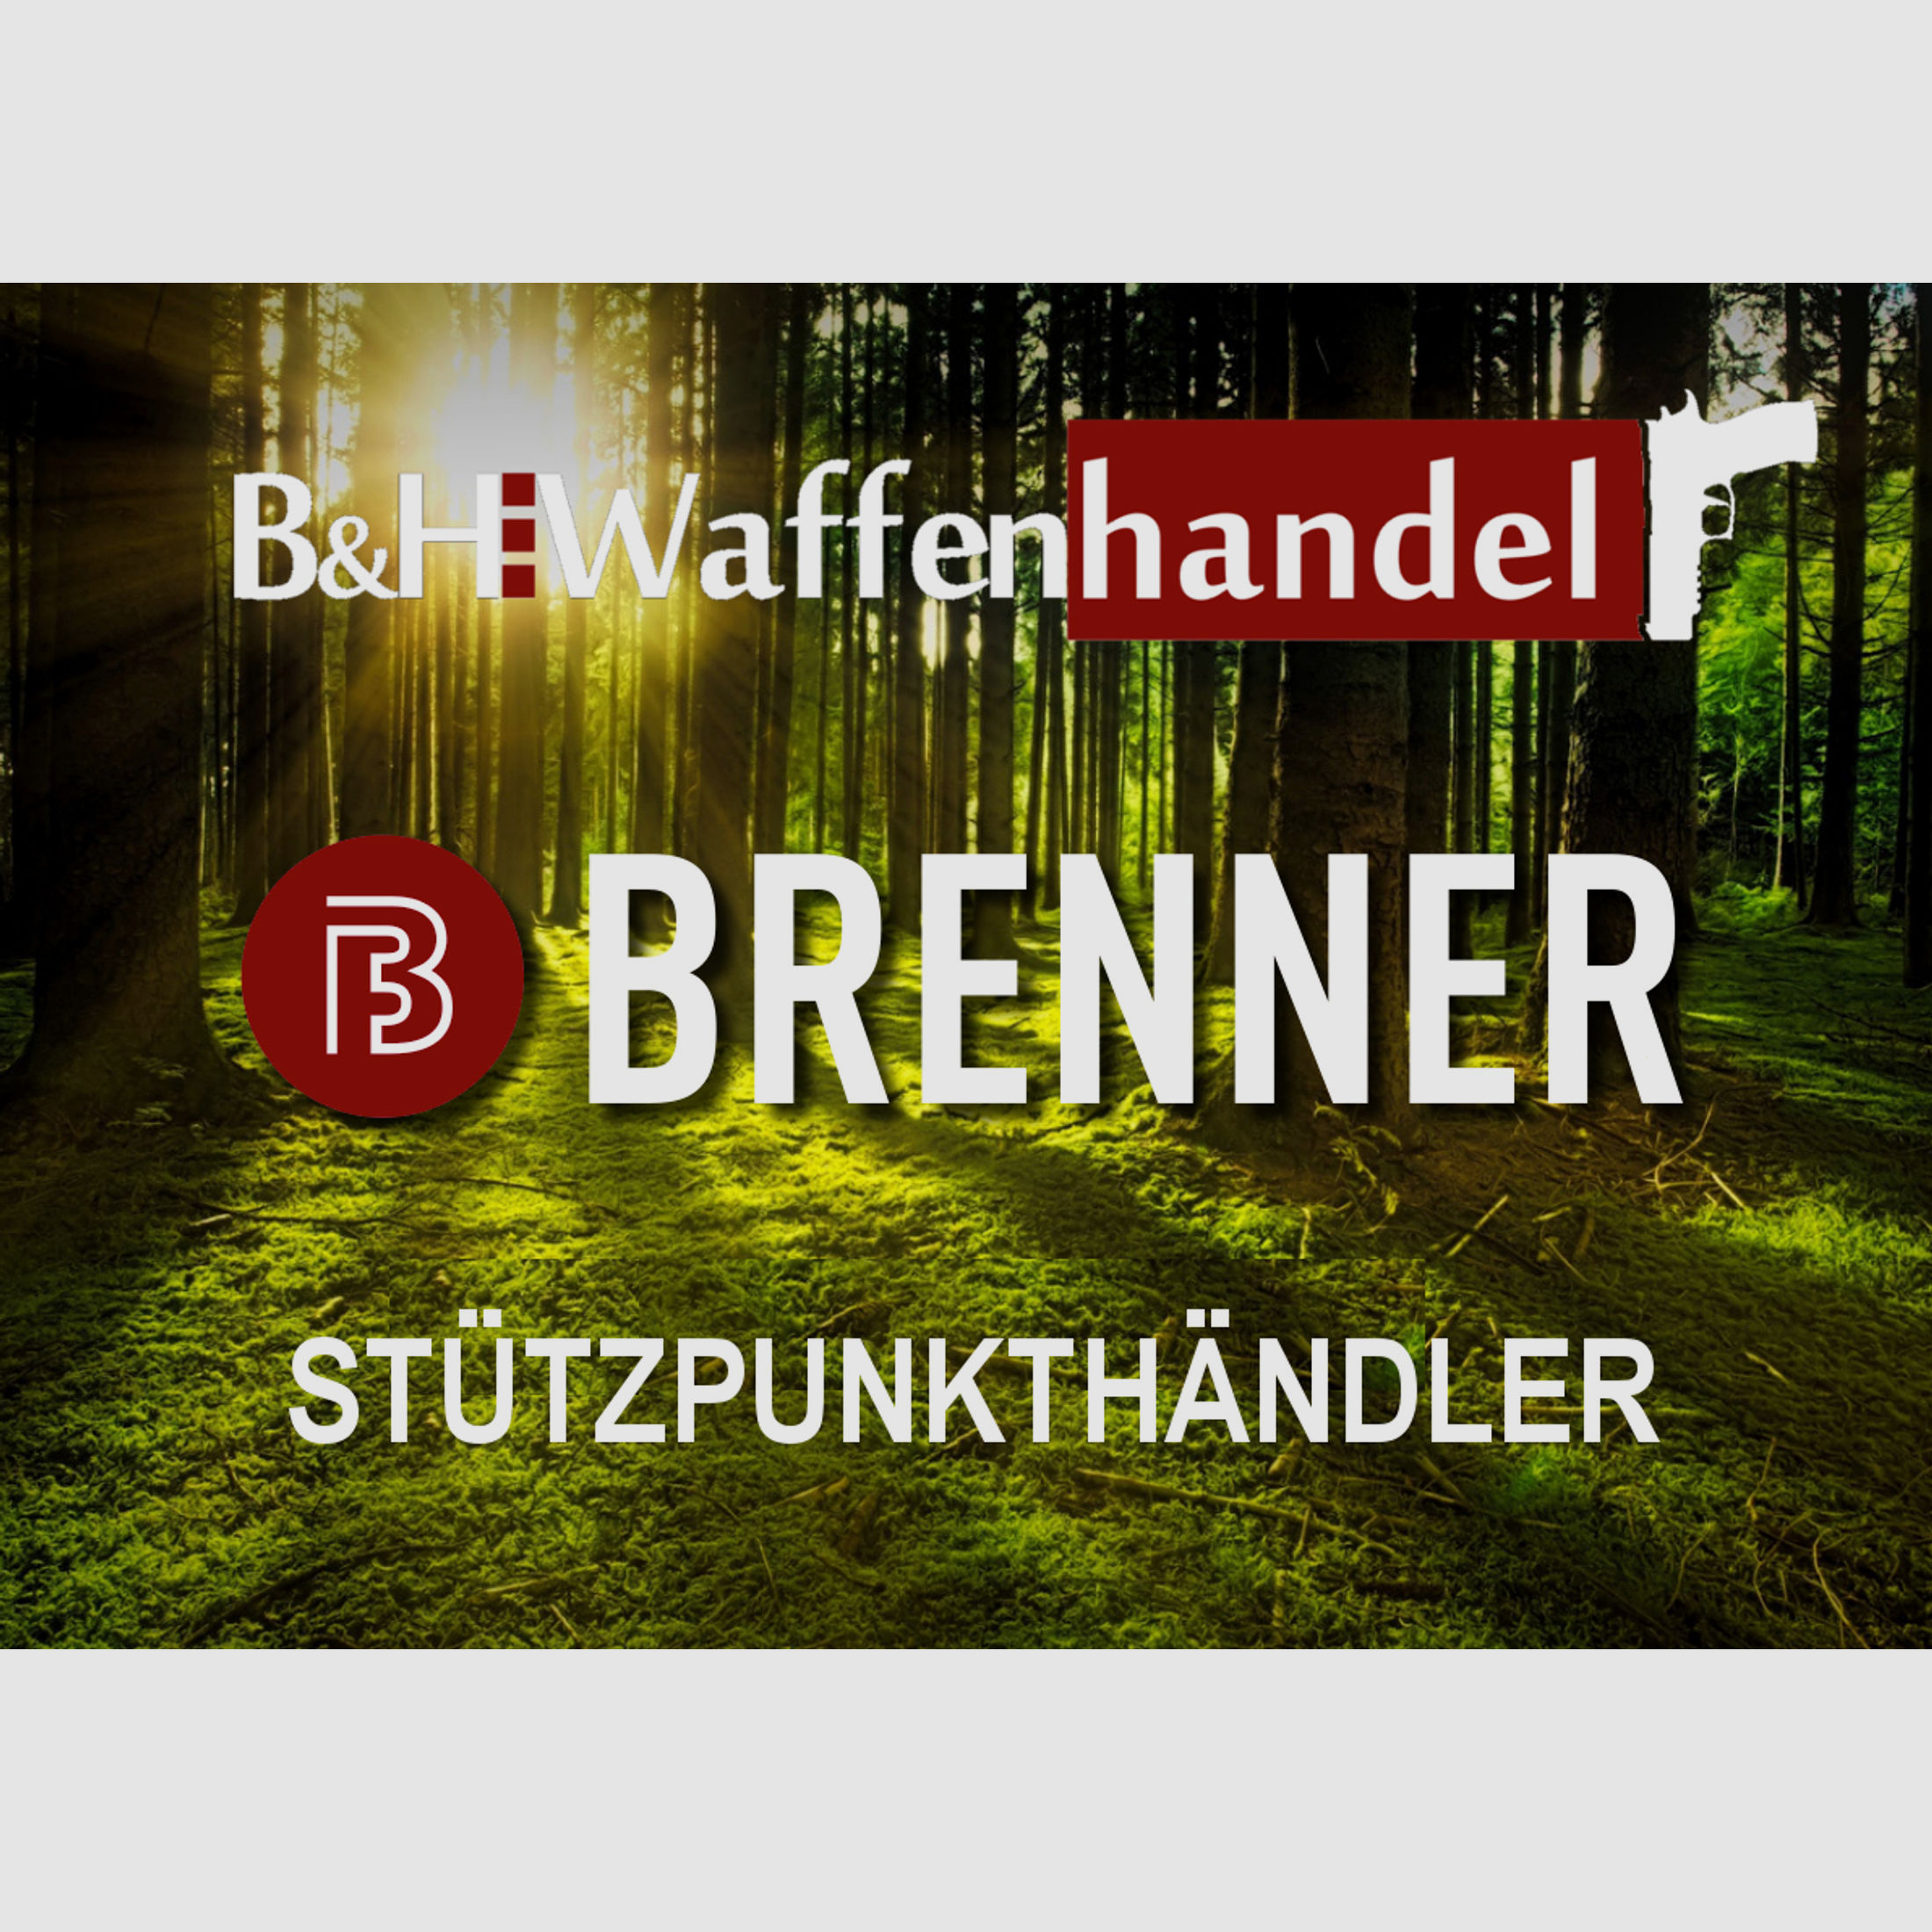 Auf Lager: Repetierer Brenner BR 20 Holzschaft mit Hawke Vantage 3-12x56 Jagd (Best.Nr.: BR20WP6) Finanzierung möglich